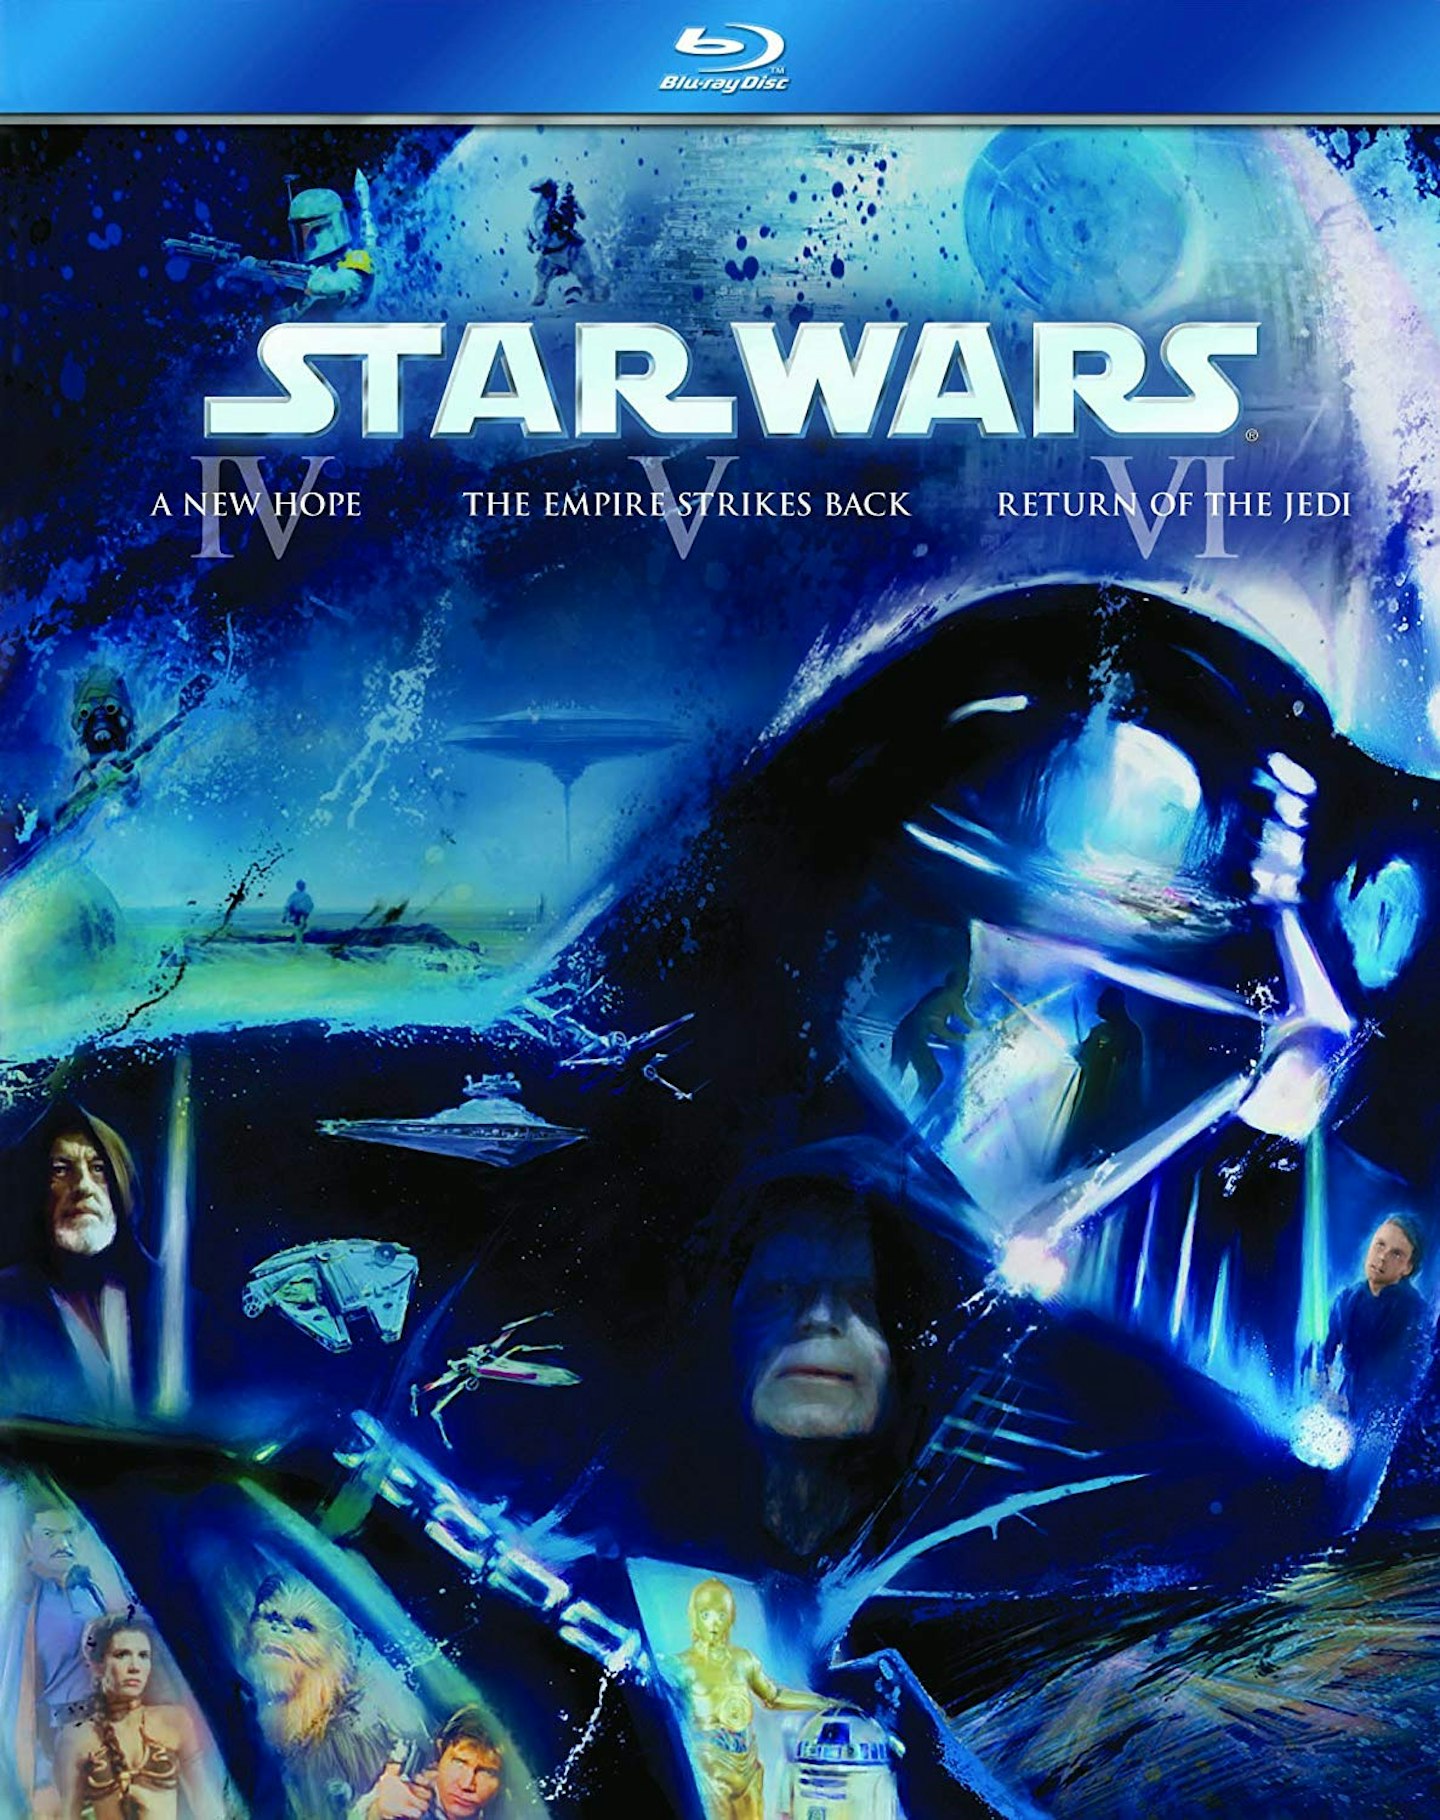 Star Wars: The Original Trilogy (Episodes IV-VI)